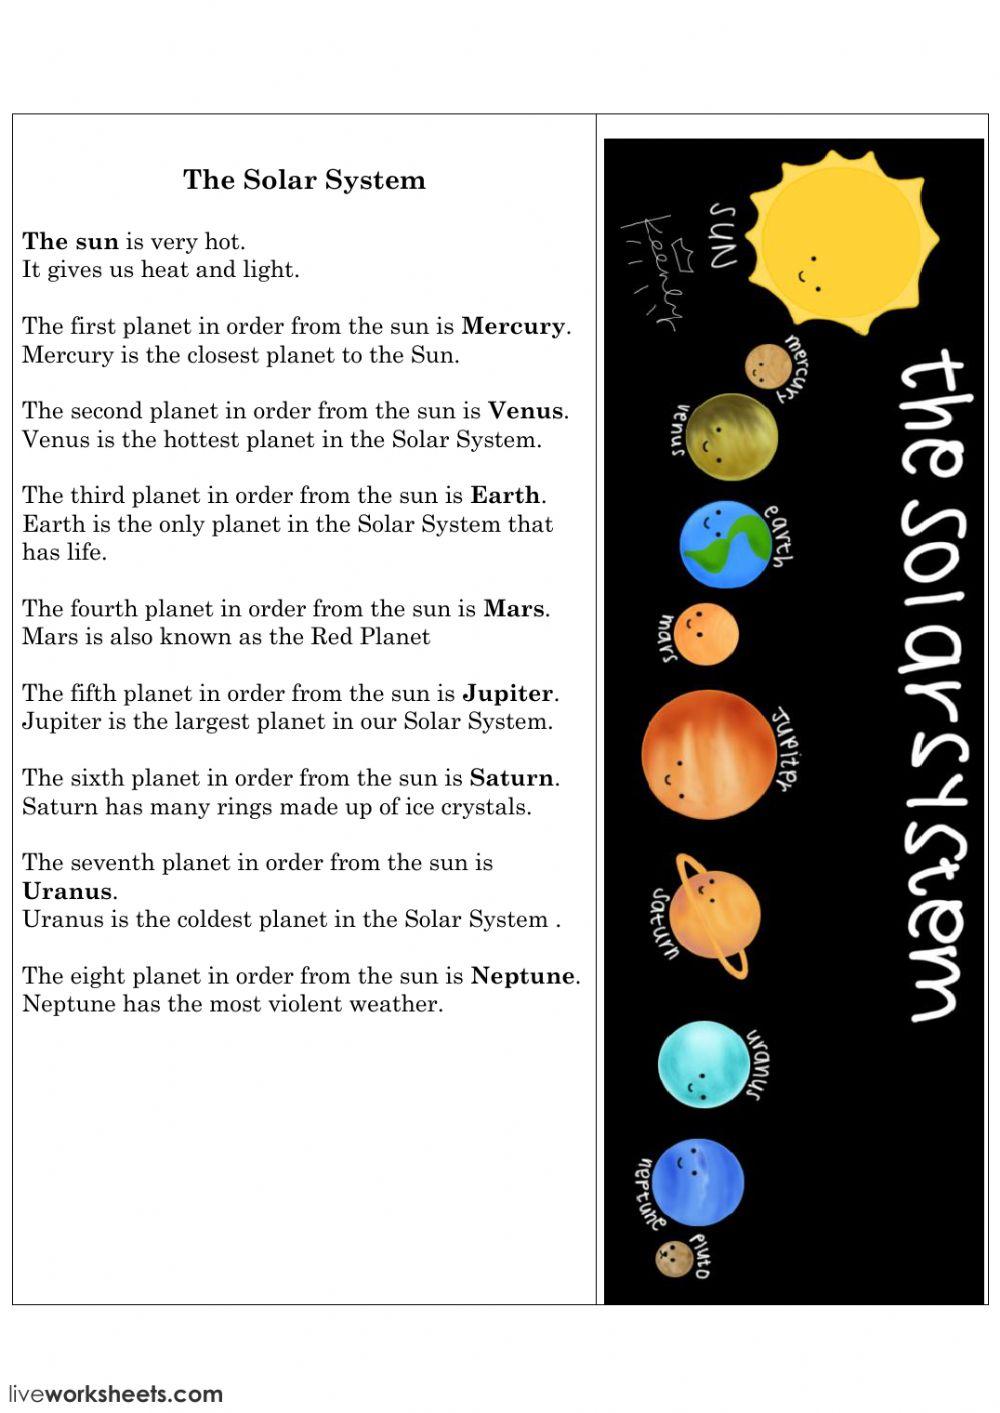 Solar System задания. The Solar System задания на английском. Солнечная система на английском языке. Планеты солнечной системы задания.